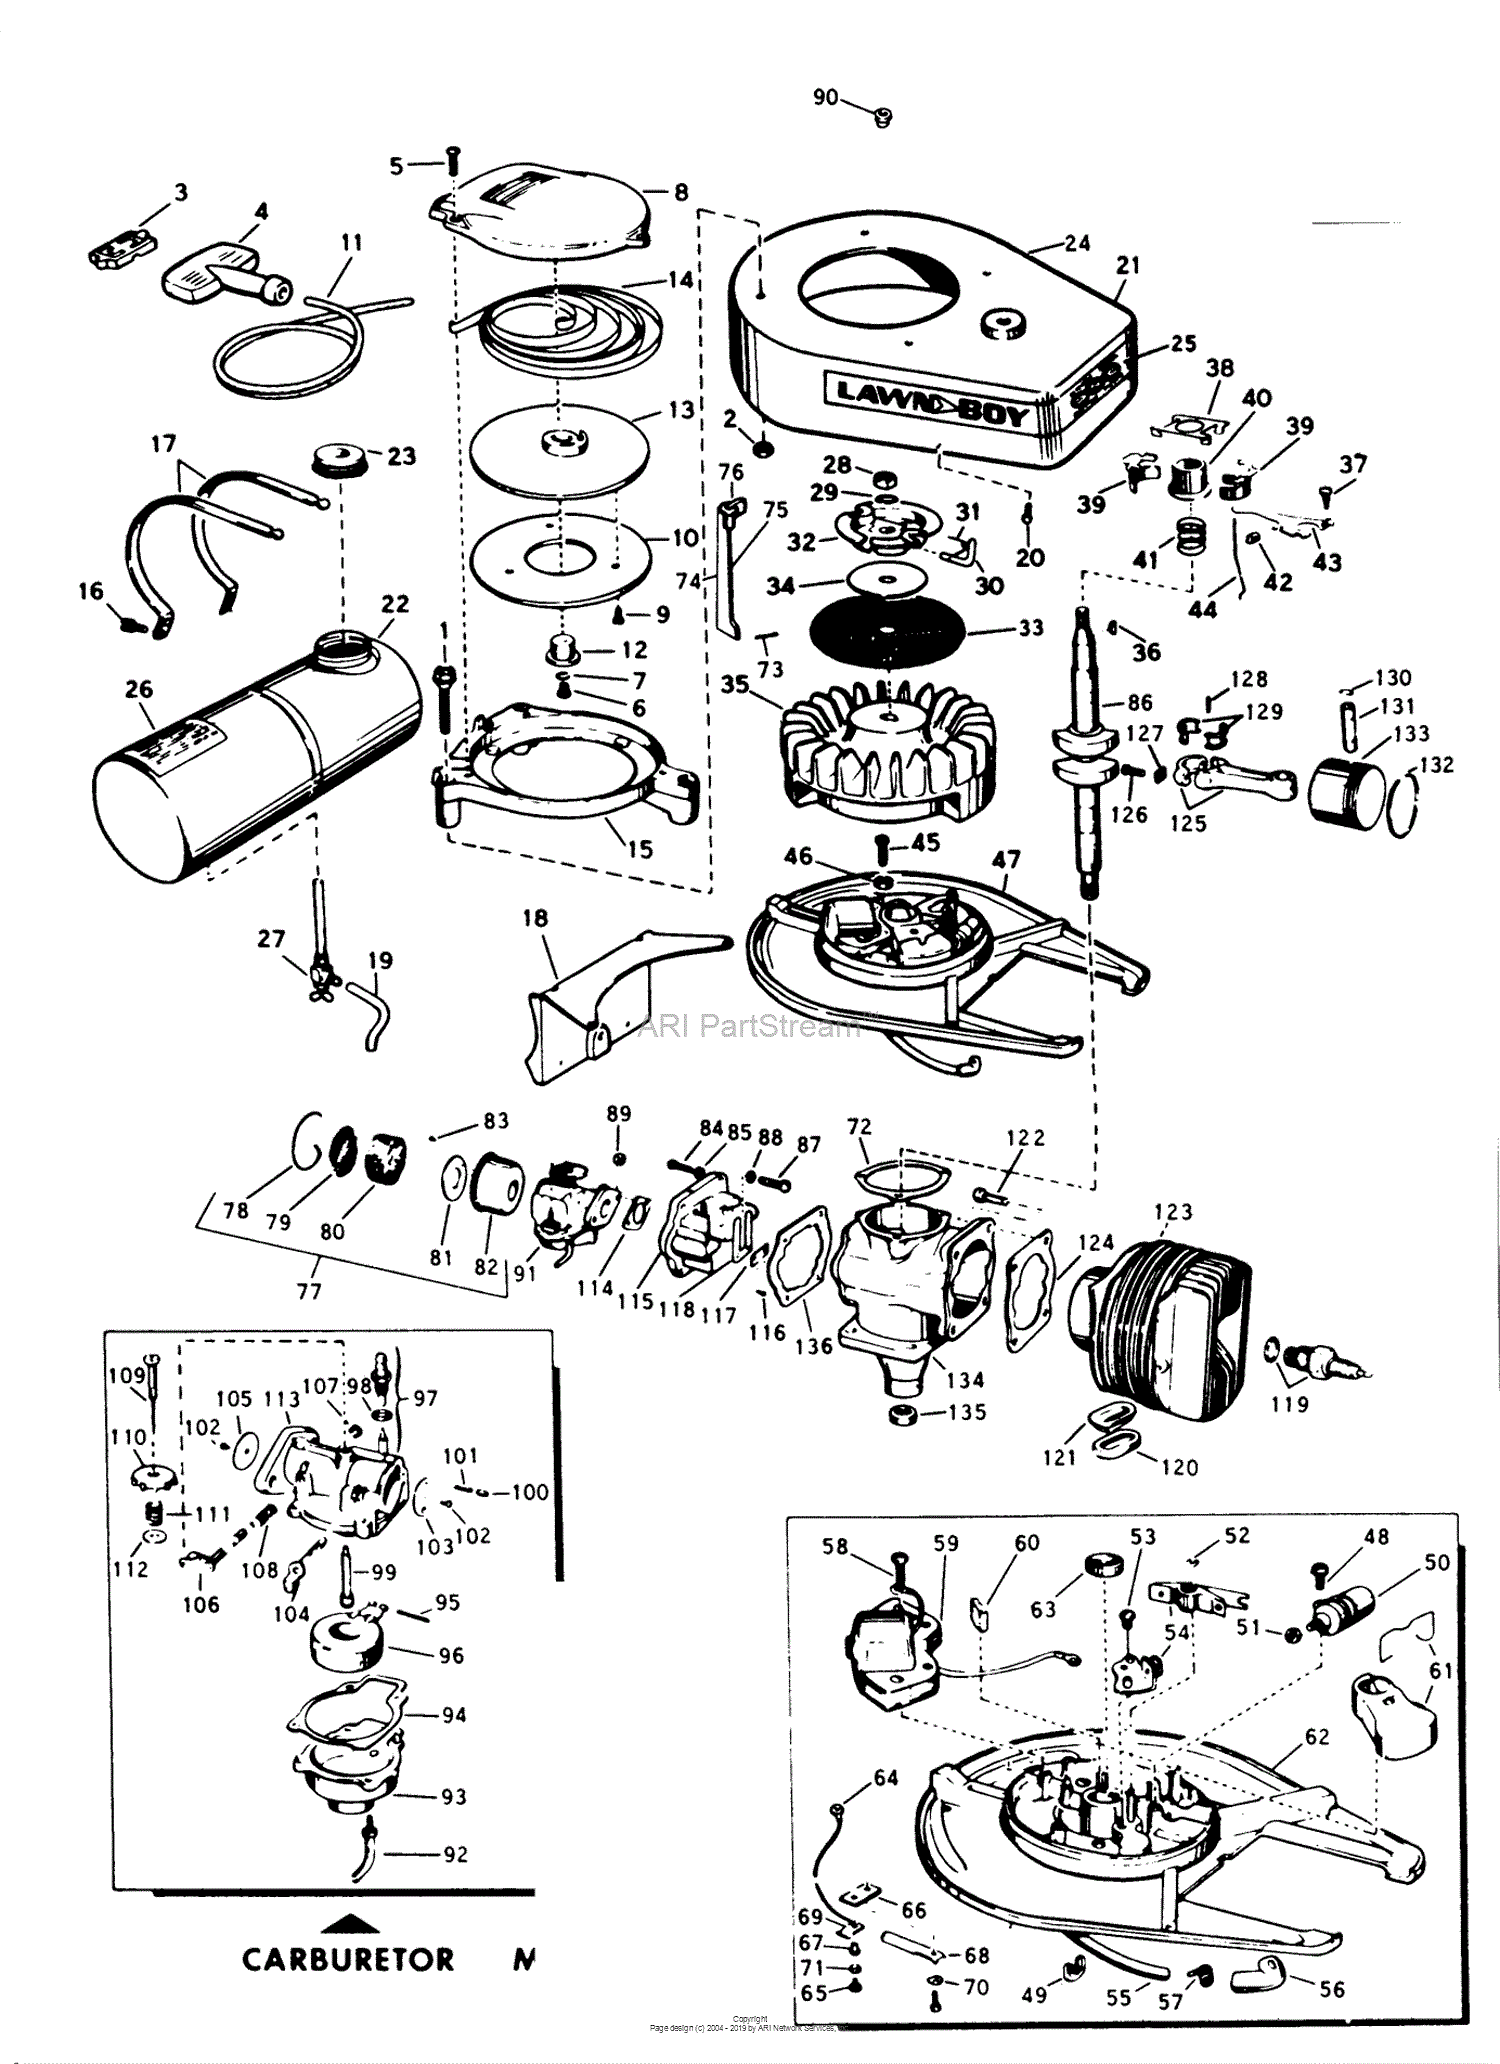 34 Lawn Boy Parts Diagram - Wire Diagram Source Information